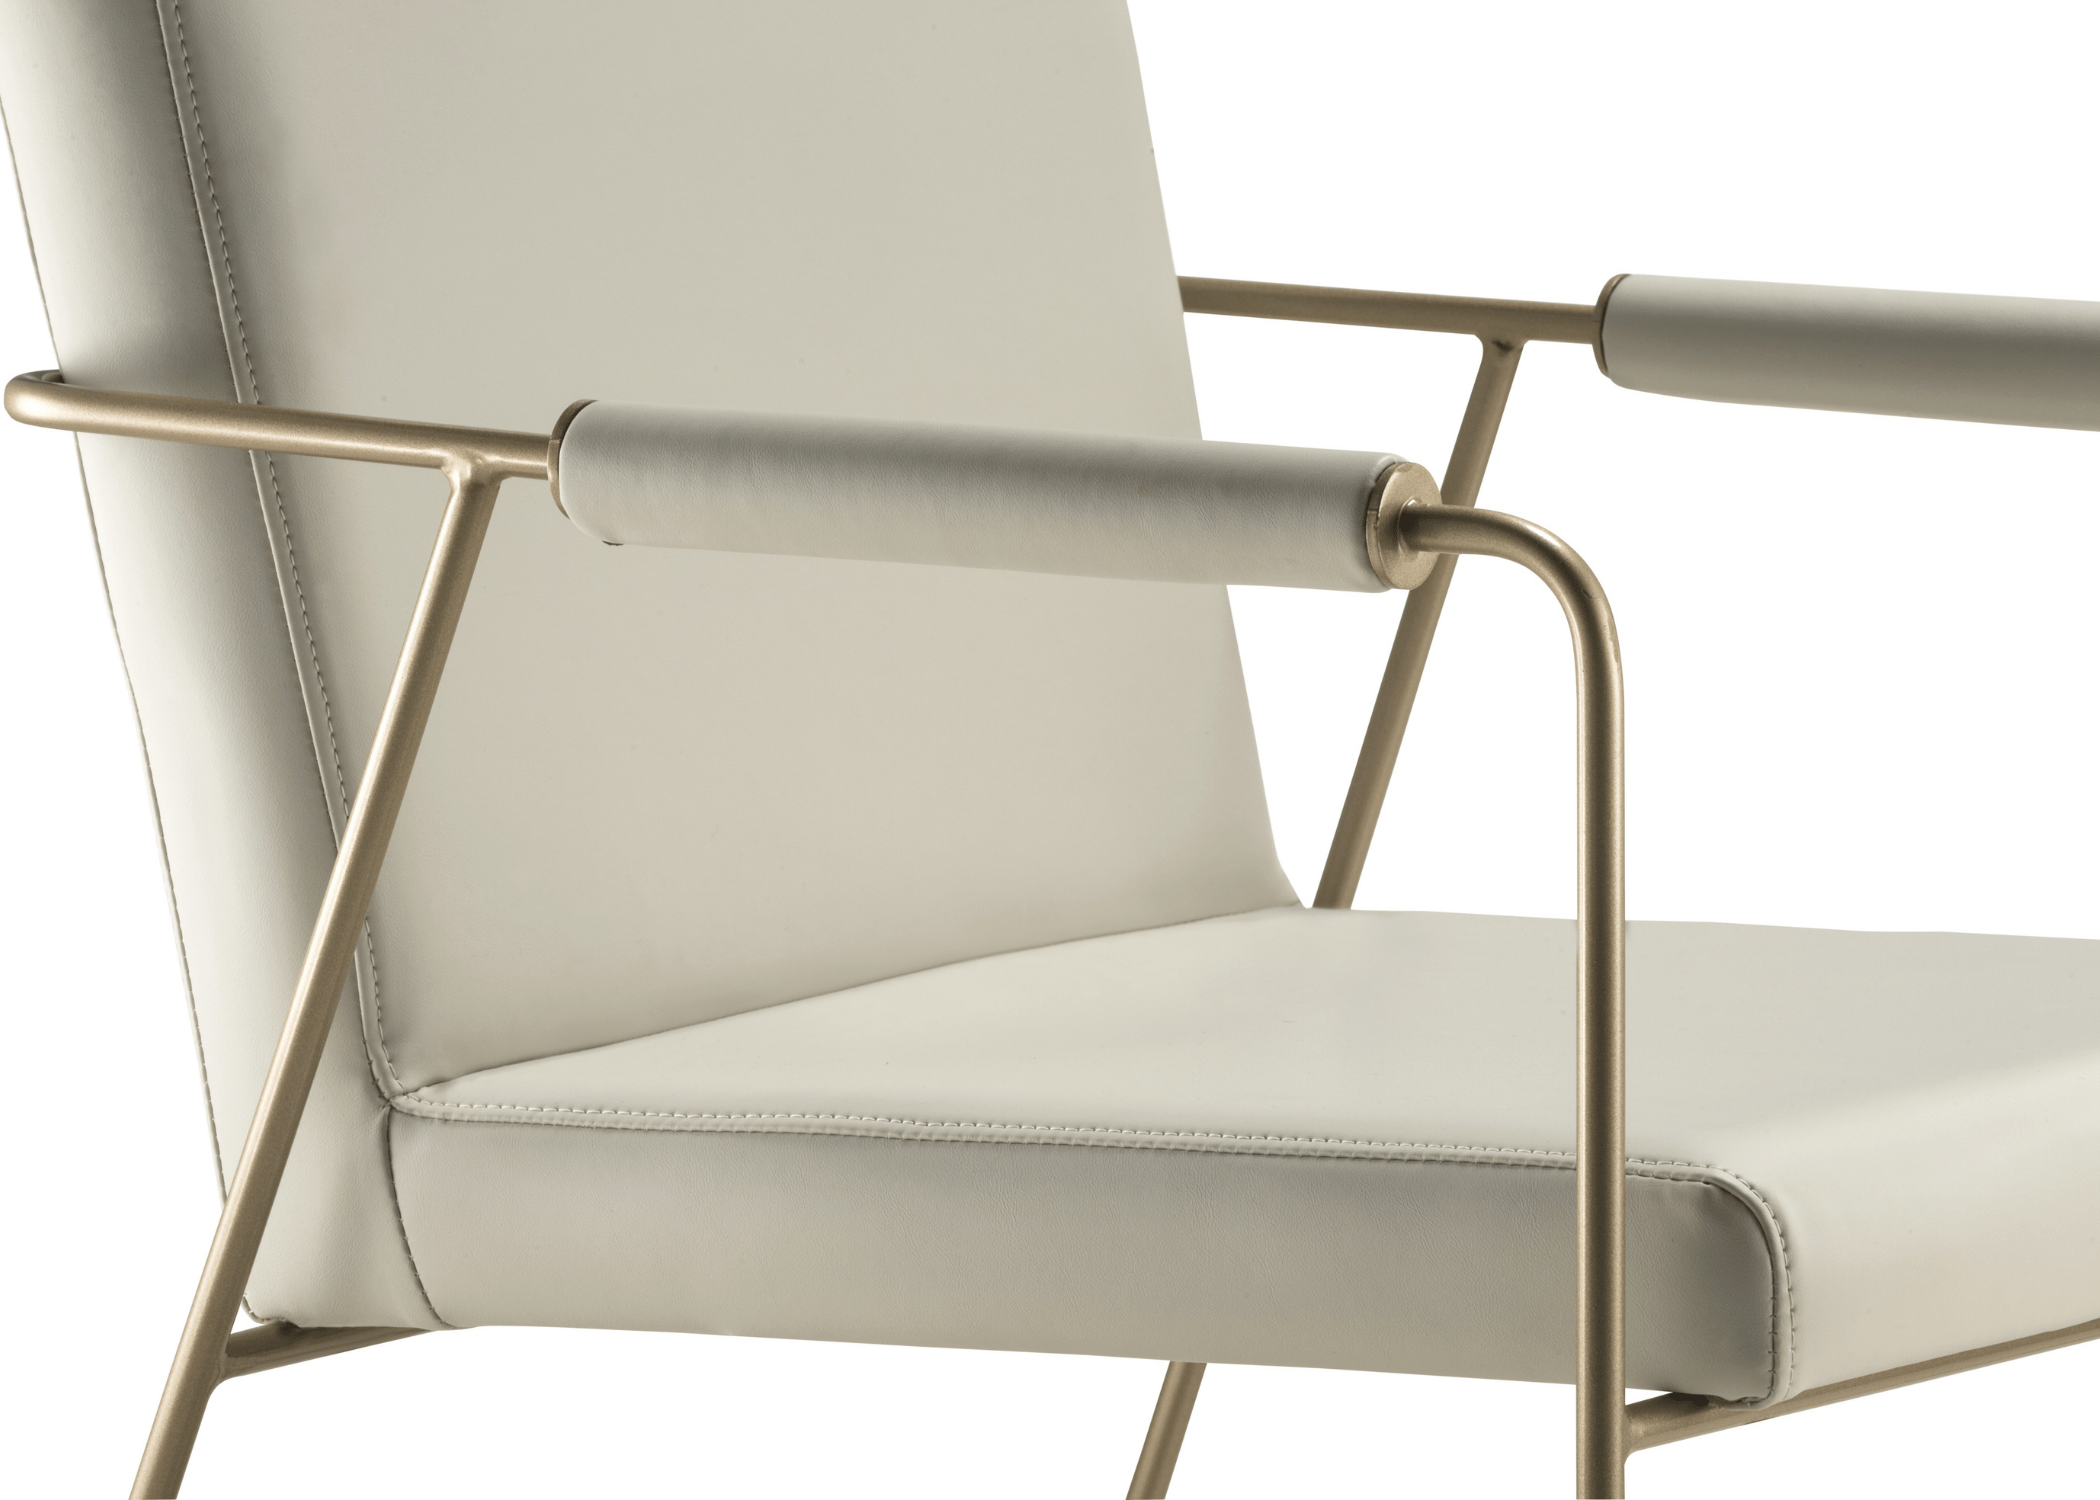 Detalhes do design inovador da Cadeira Hathor